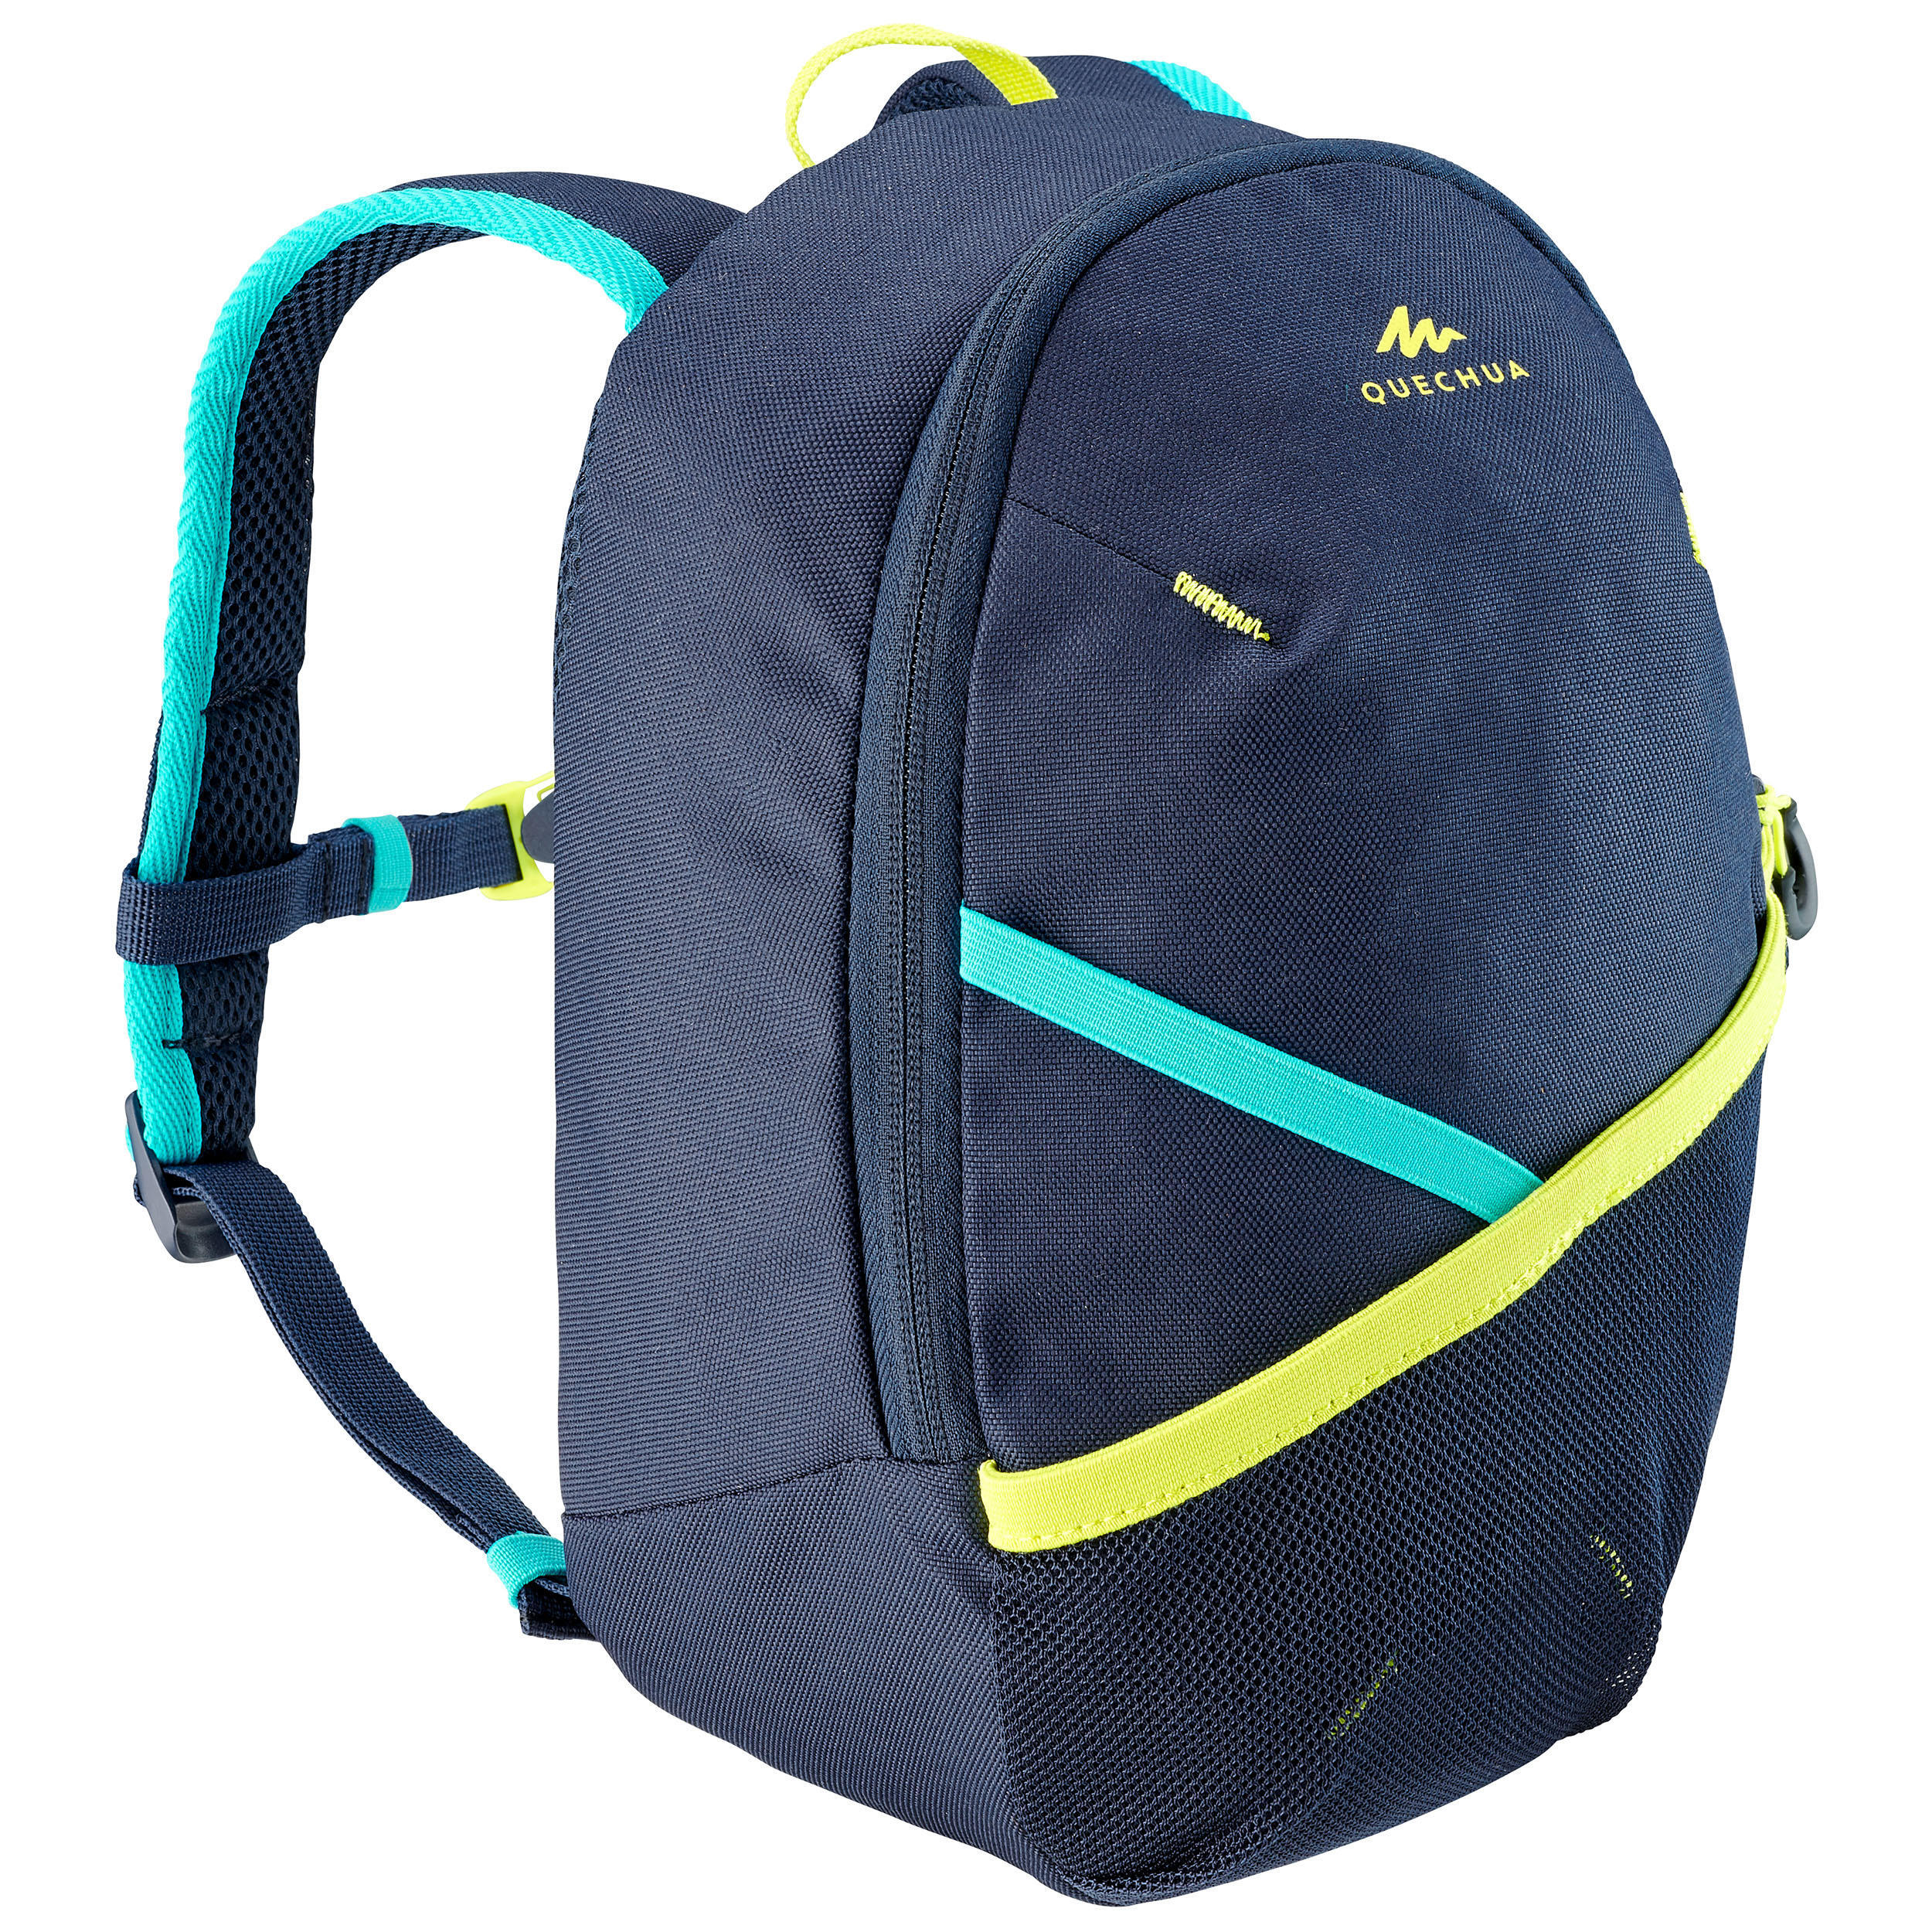 Рюкзак походный детский 5 л Quechua MH100, синий сумка для детского сада милый детский рюкзак школьные ранцы для малышей